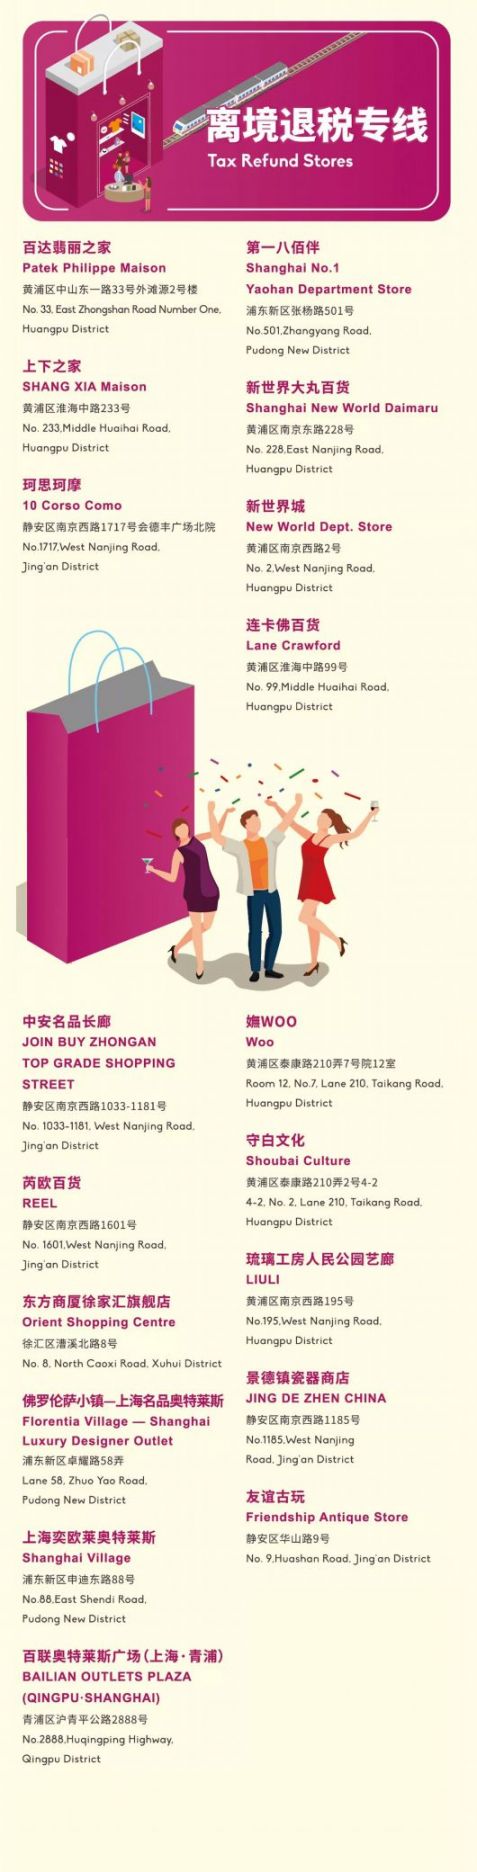 2018上海购物节开启10条购物专线 覆盖超200个特色购物地